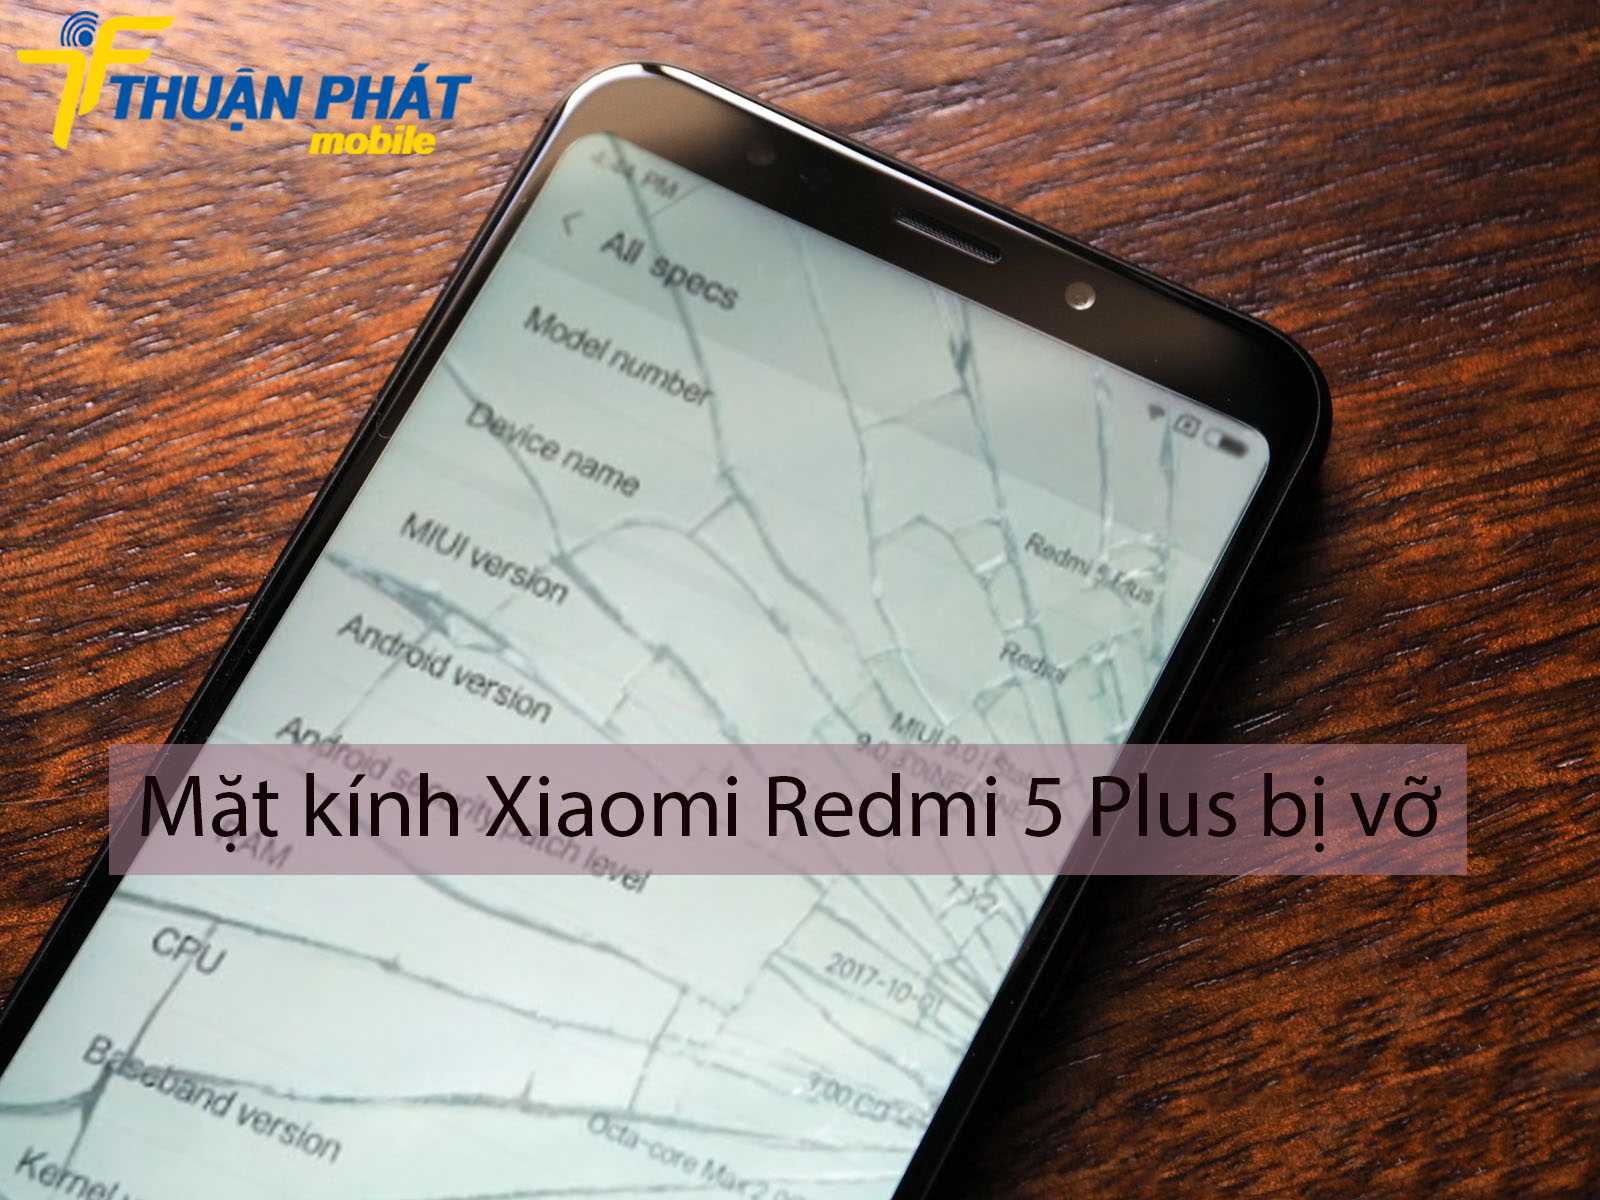 Mặt kính Xiaomi Redmi 5 Plus bị vỡ